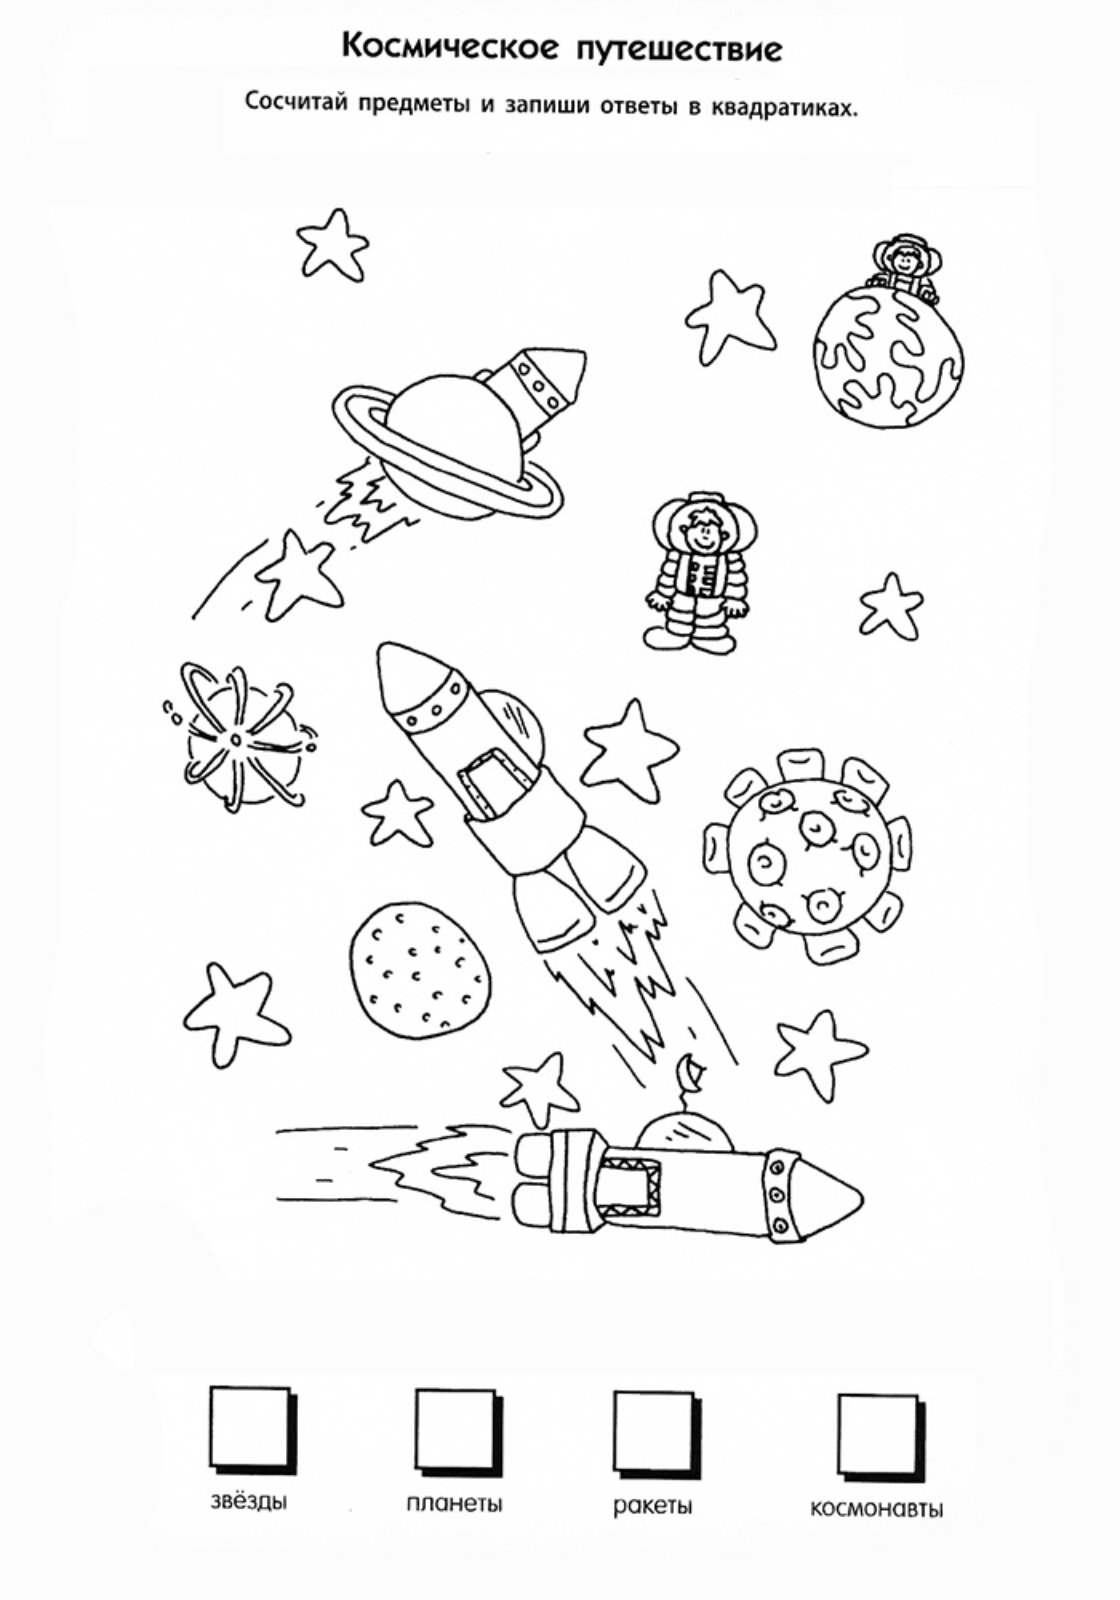 Задания ко дню космонавтики. Космос задания для детей. Космические задания для дошкольников. Задания по теме космос для дошкольников. Космонавтика задания для дошкольников.